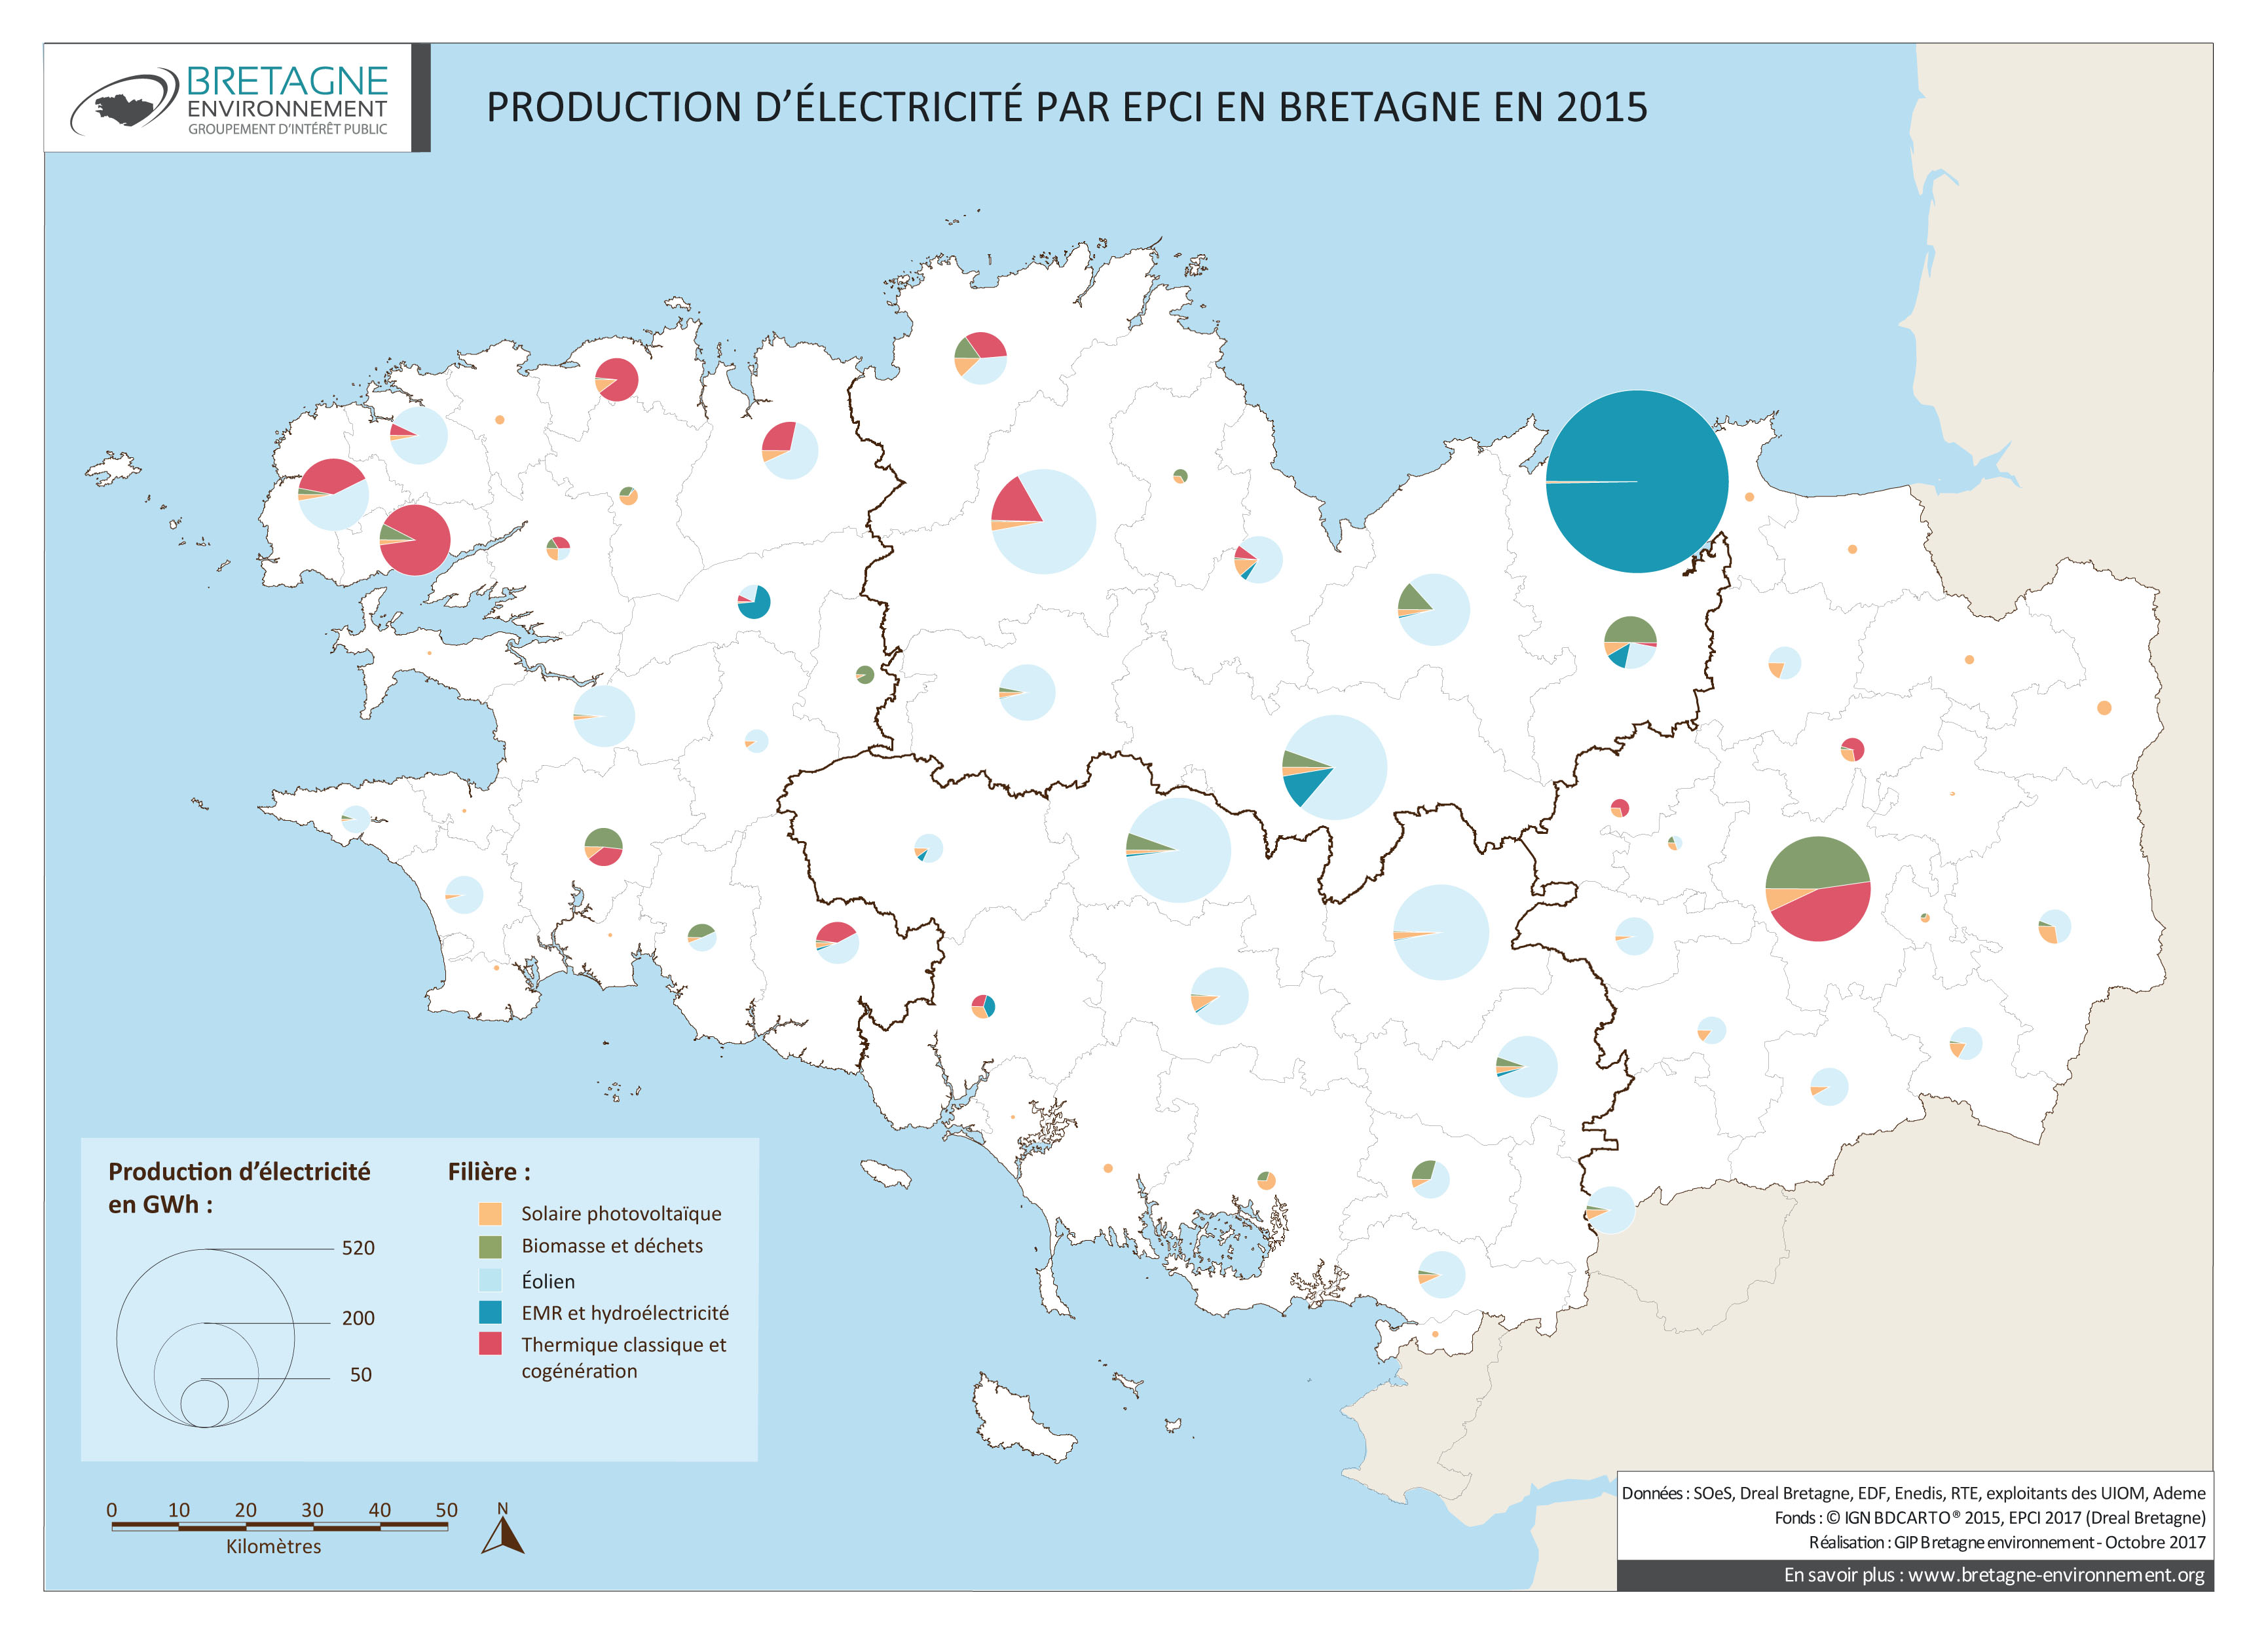 Production d'électricité en 2015